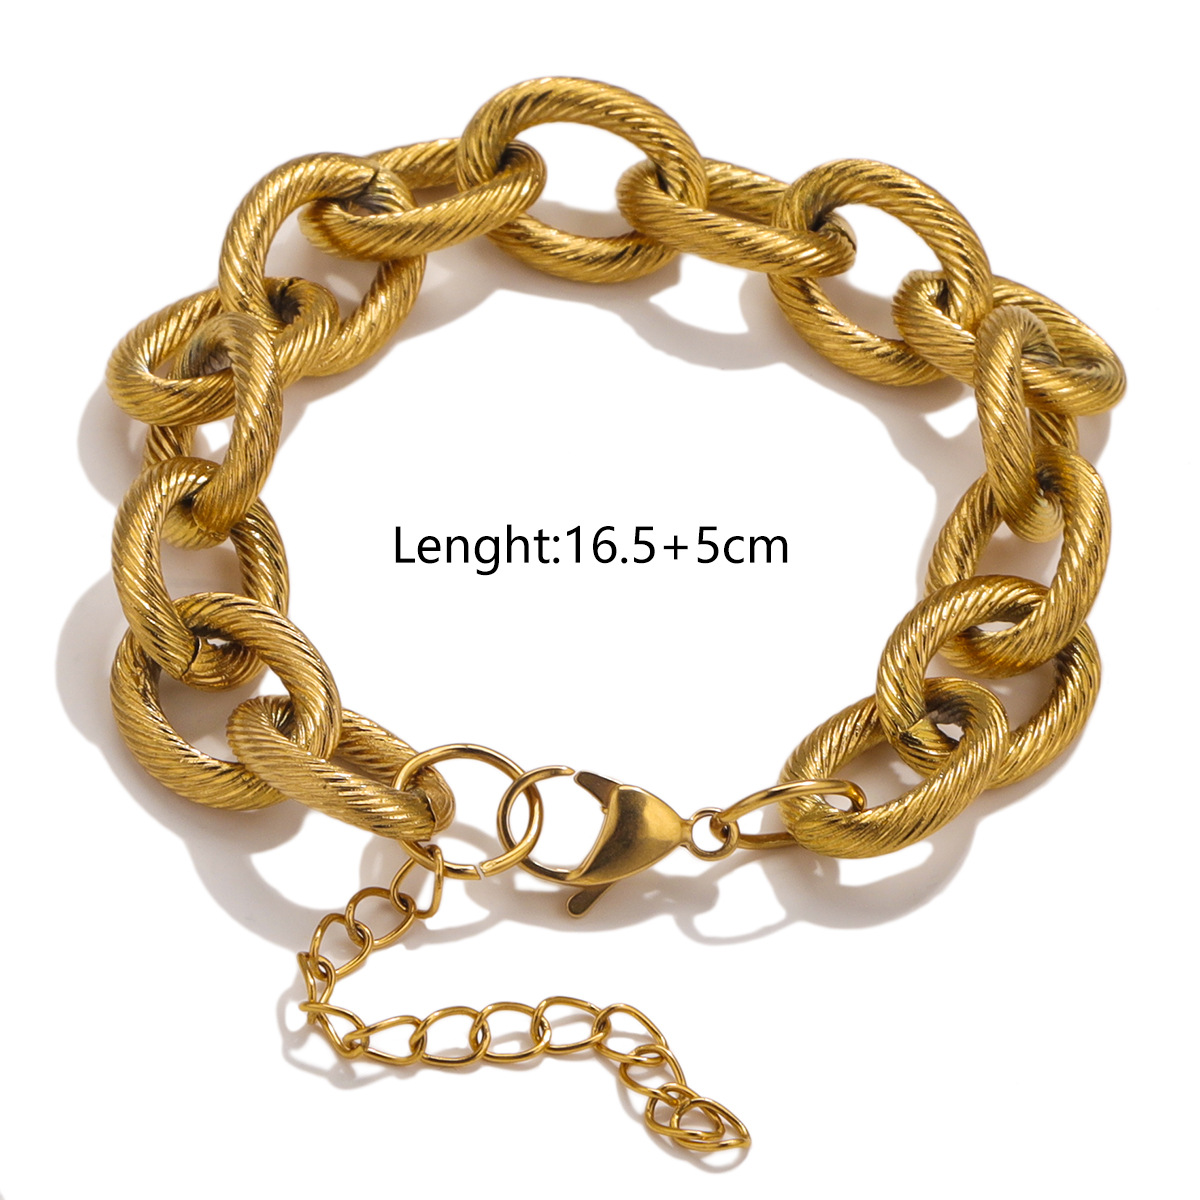 3:Gold bracelet - 16cm tail chain 5cm